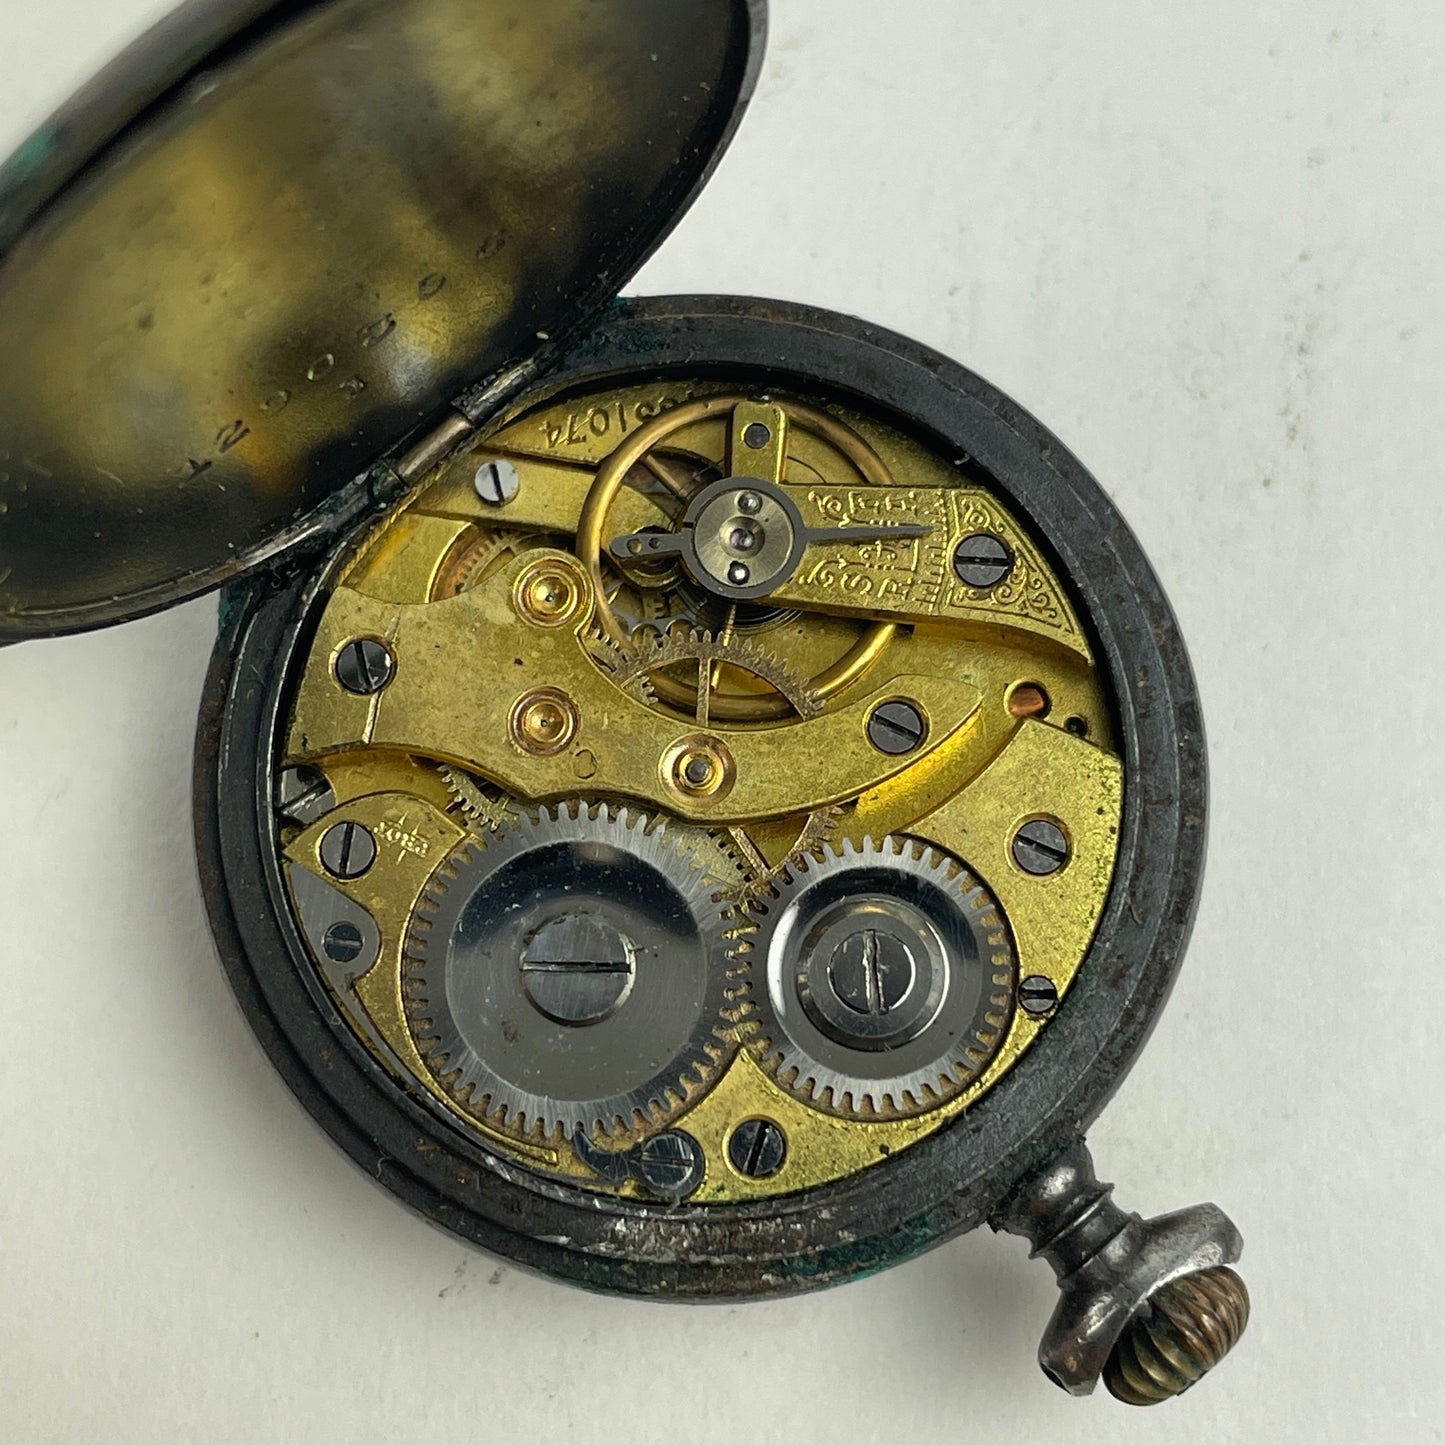 Nov Lot 30- Swiss Pocket Watch in Leather Case